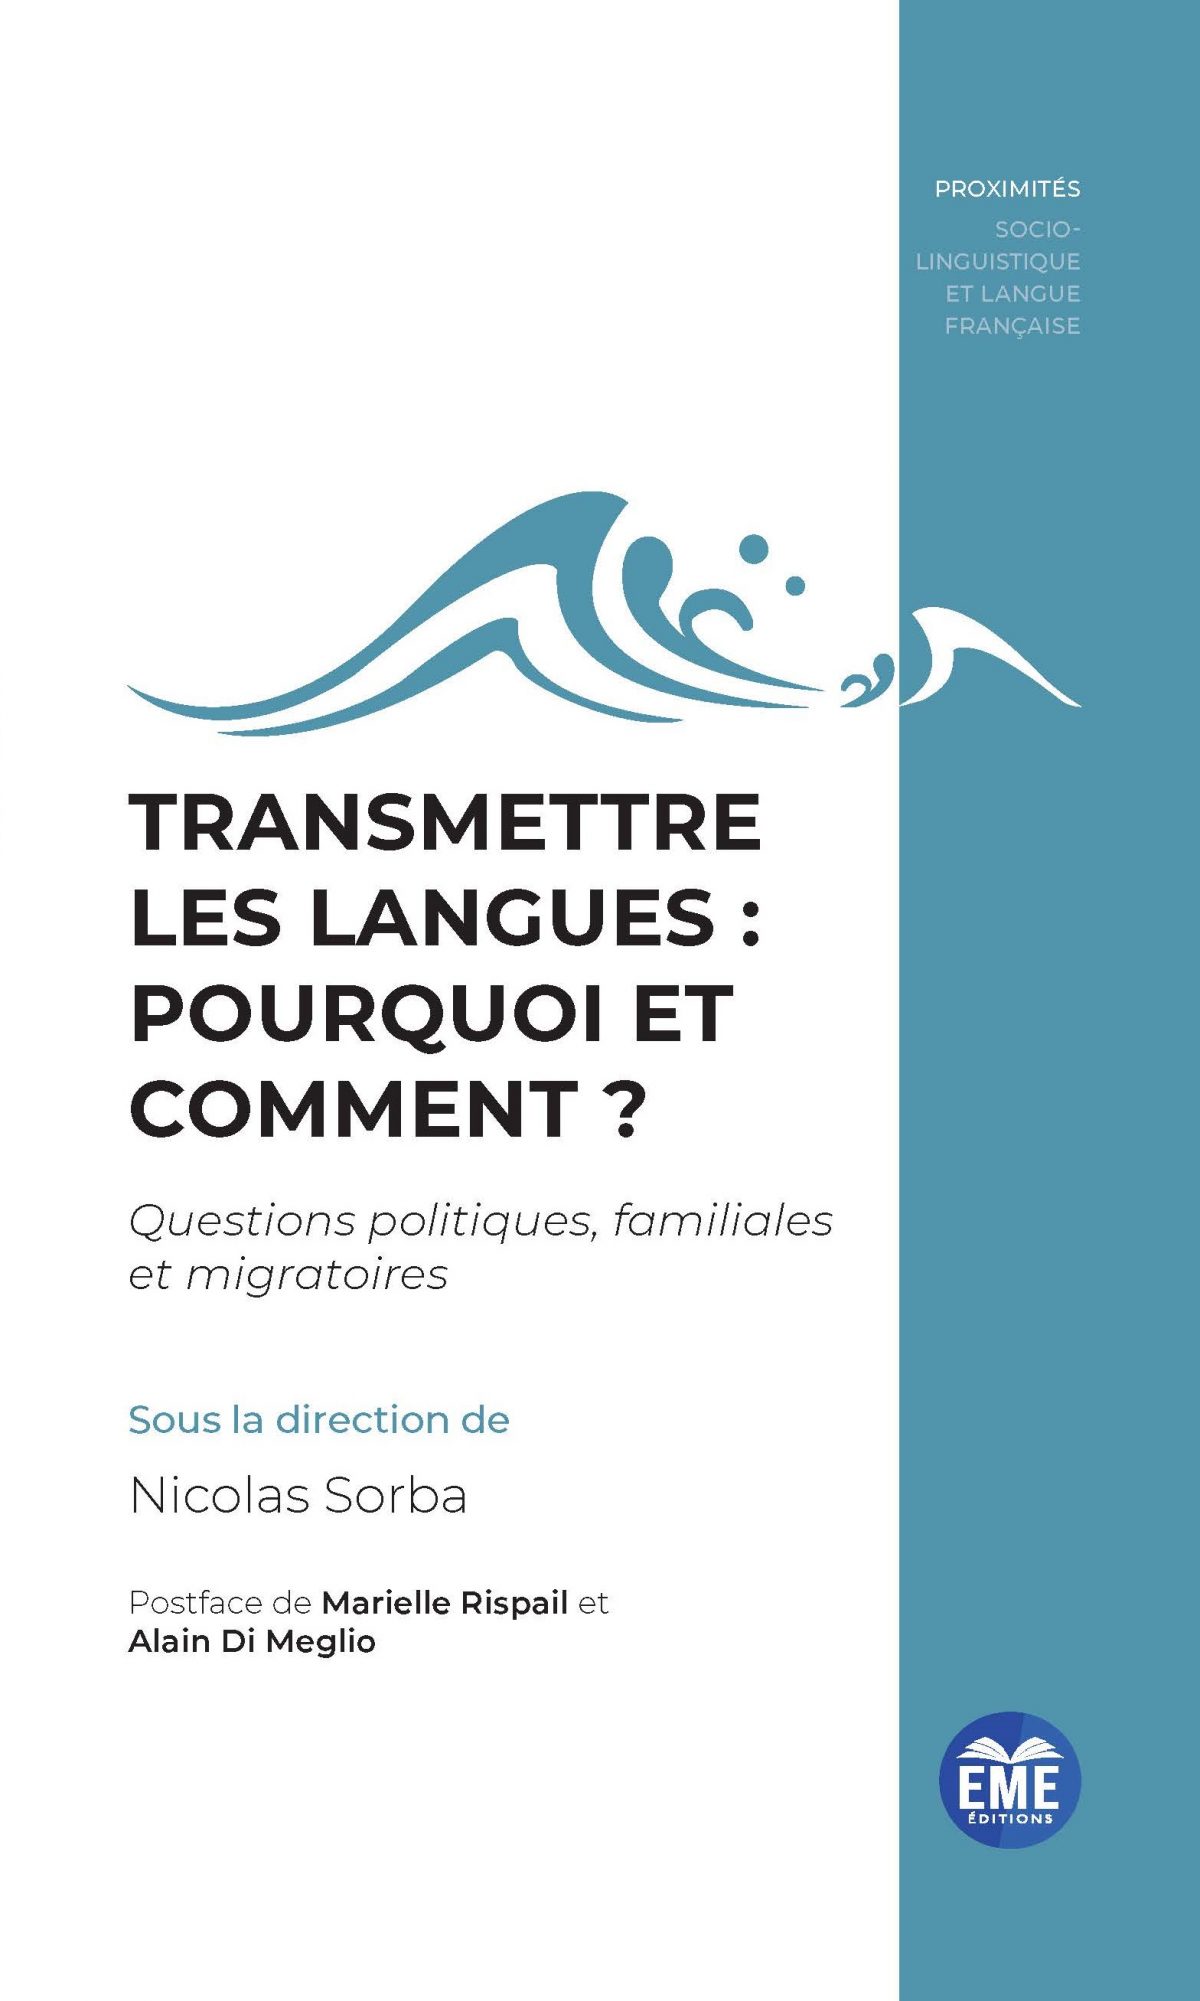 Transmettre les langues pourquoi et comment ? Questions politiques, familiales et migratoires ?, EME éditions, 2021.